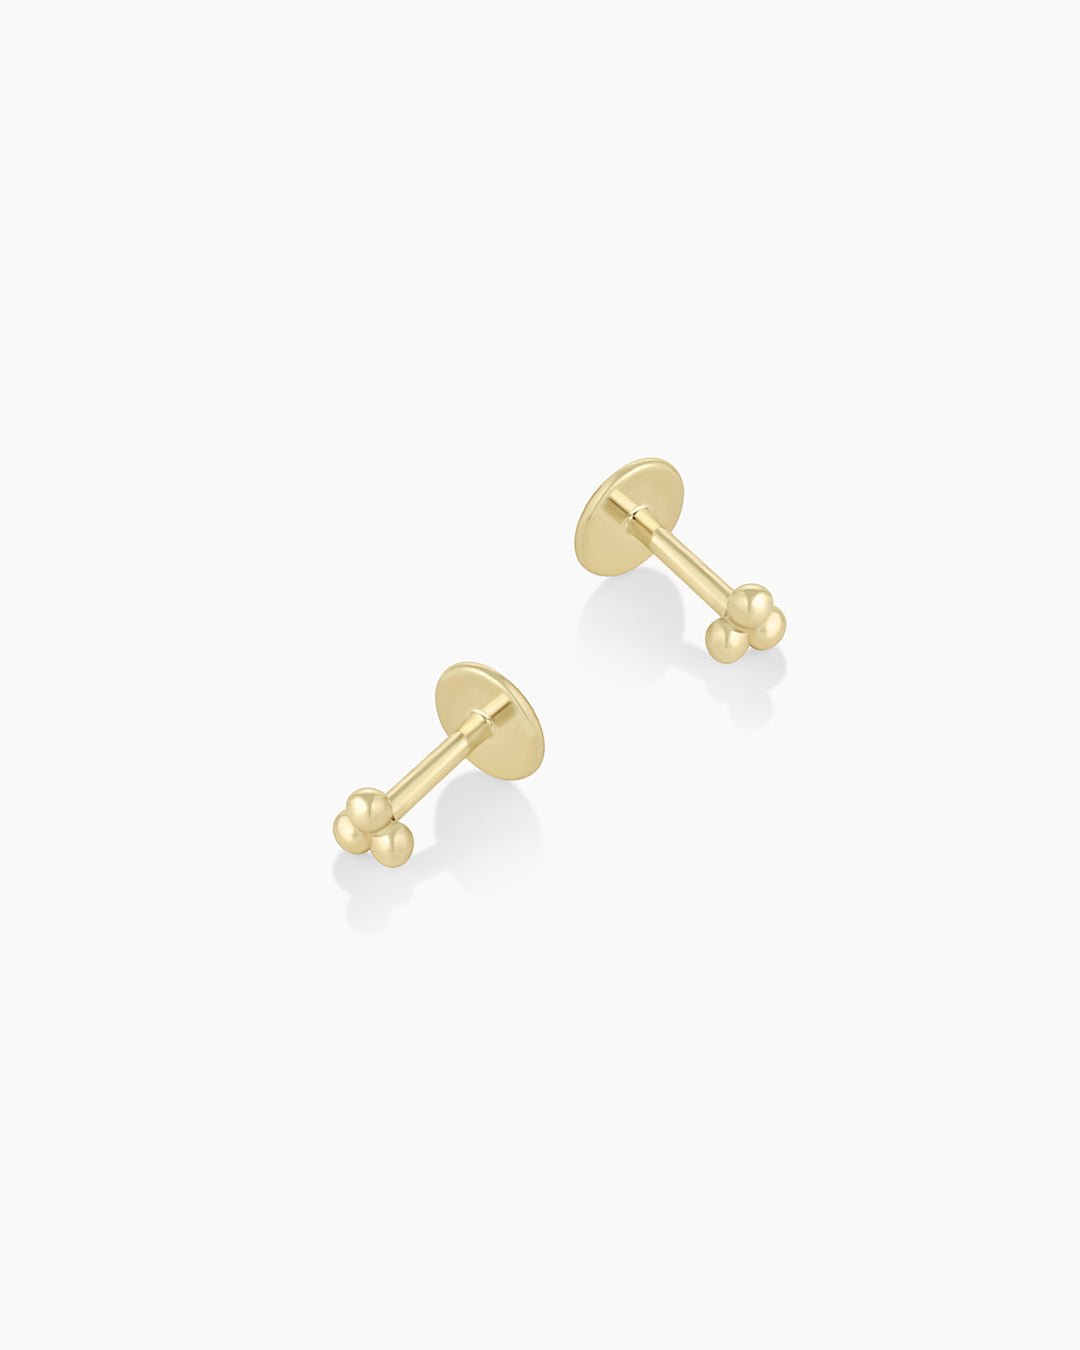 SmileBelle 2 Pairs Gold Flat Back Earrings, 14K Screw Back Earrings Gold Cartilage Gold Stud Earrings Hypoallergenic Tragus Earrings for Women Girls